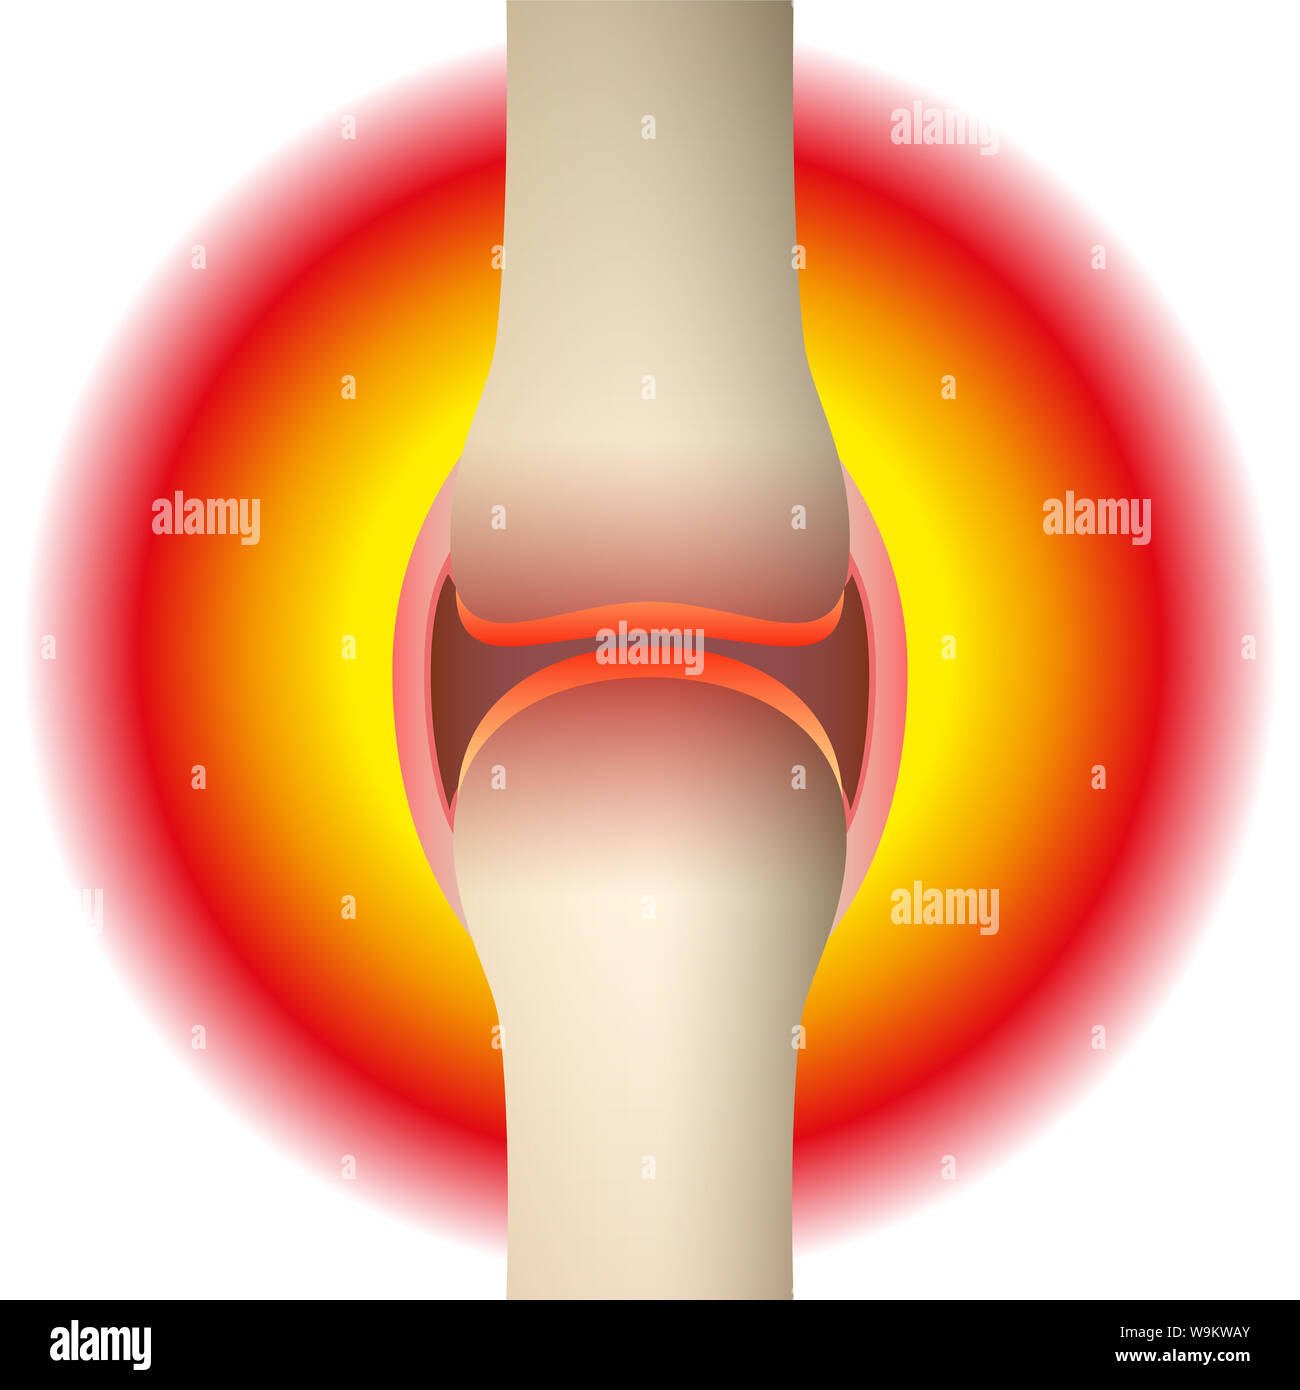 Gelenkschmerzen - schematische Darstellung der anatomischen Graphik eines synovial Joint mit Arthritis, Rheuma, Gicht, Arthrose oder Entzündung. Stockfoto